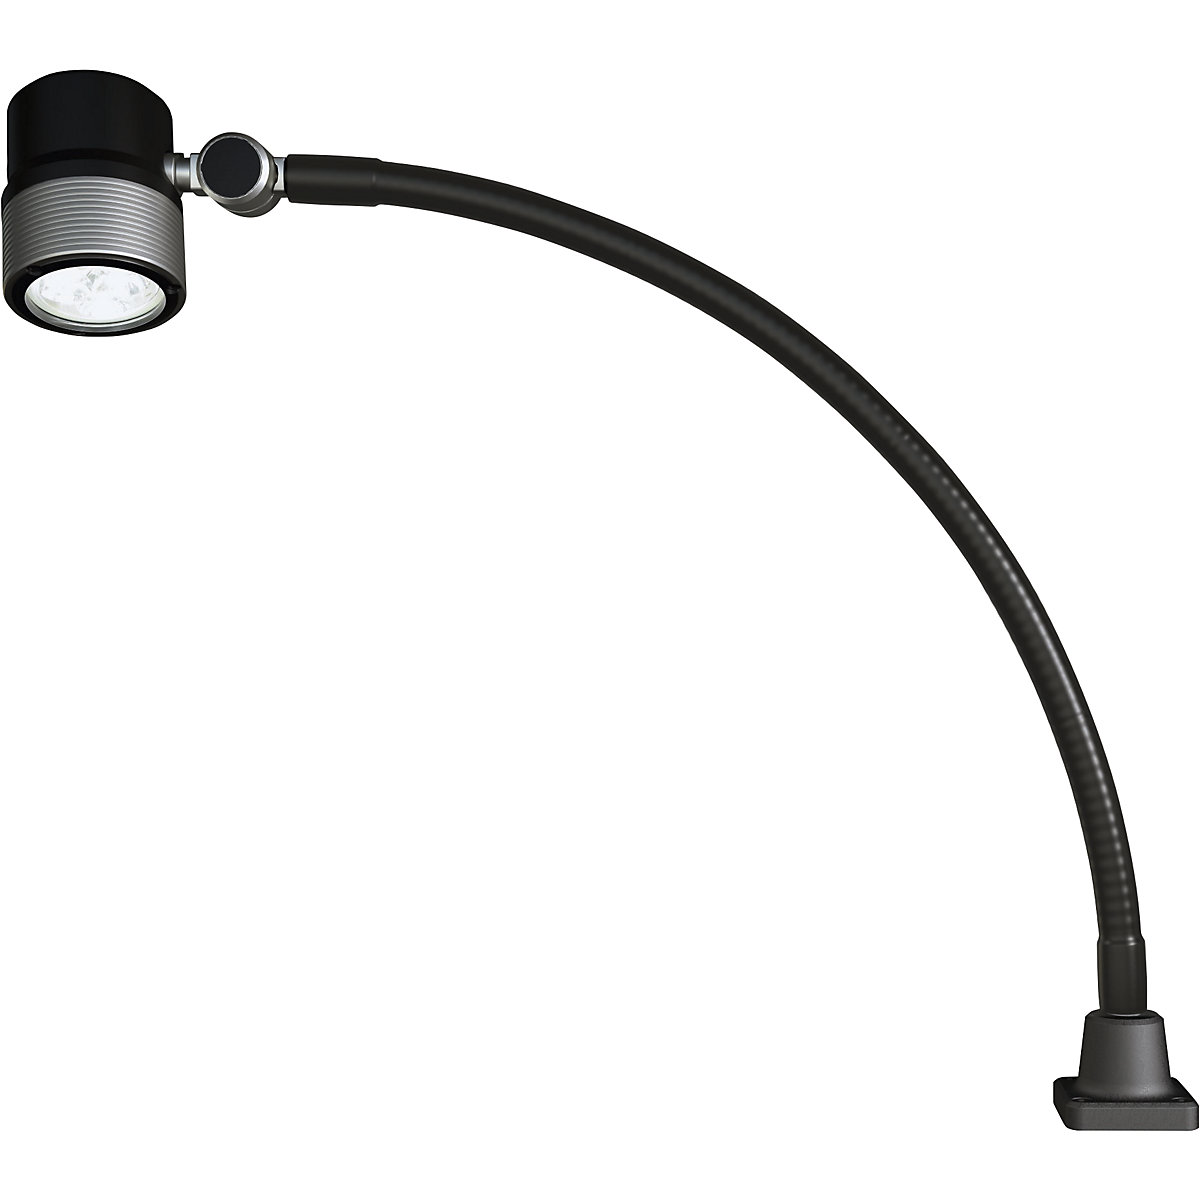 Strojna svjetiljka LED s fleksibilnim krakom – Waldmann